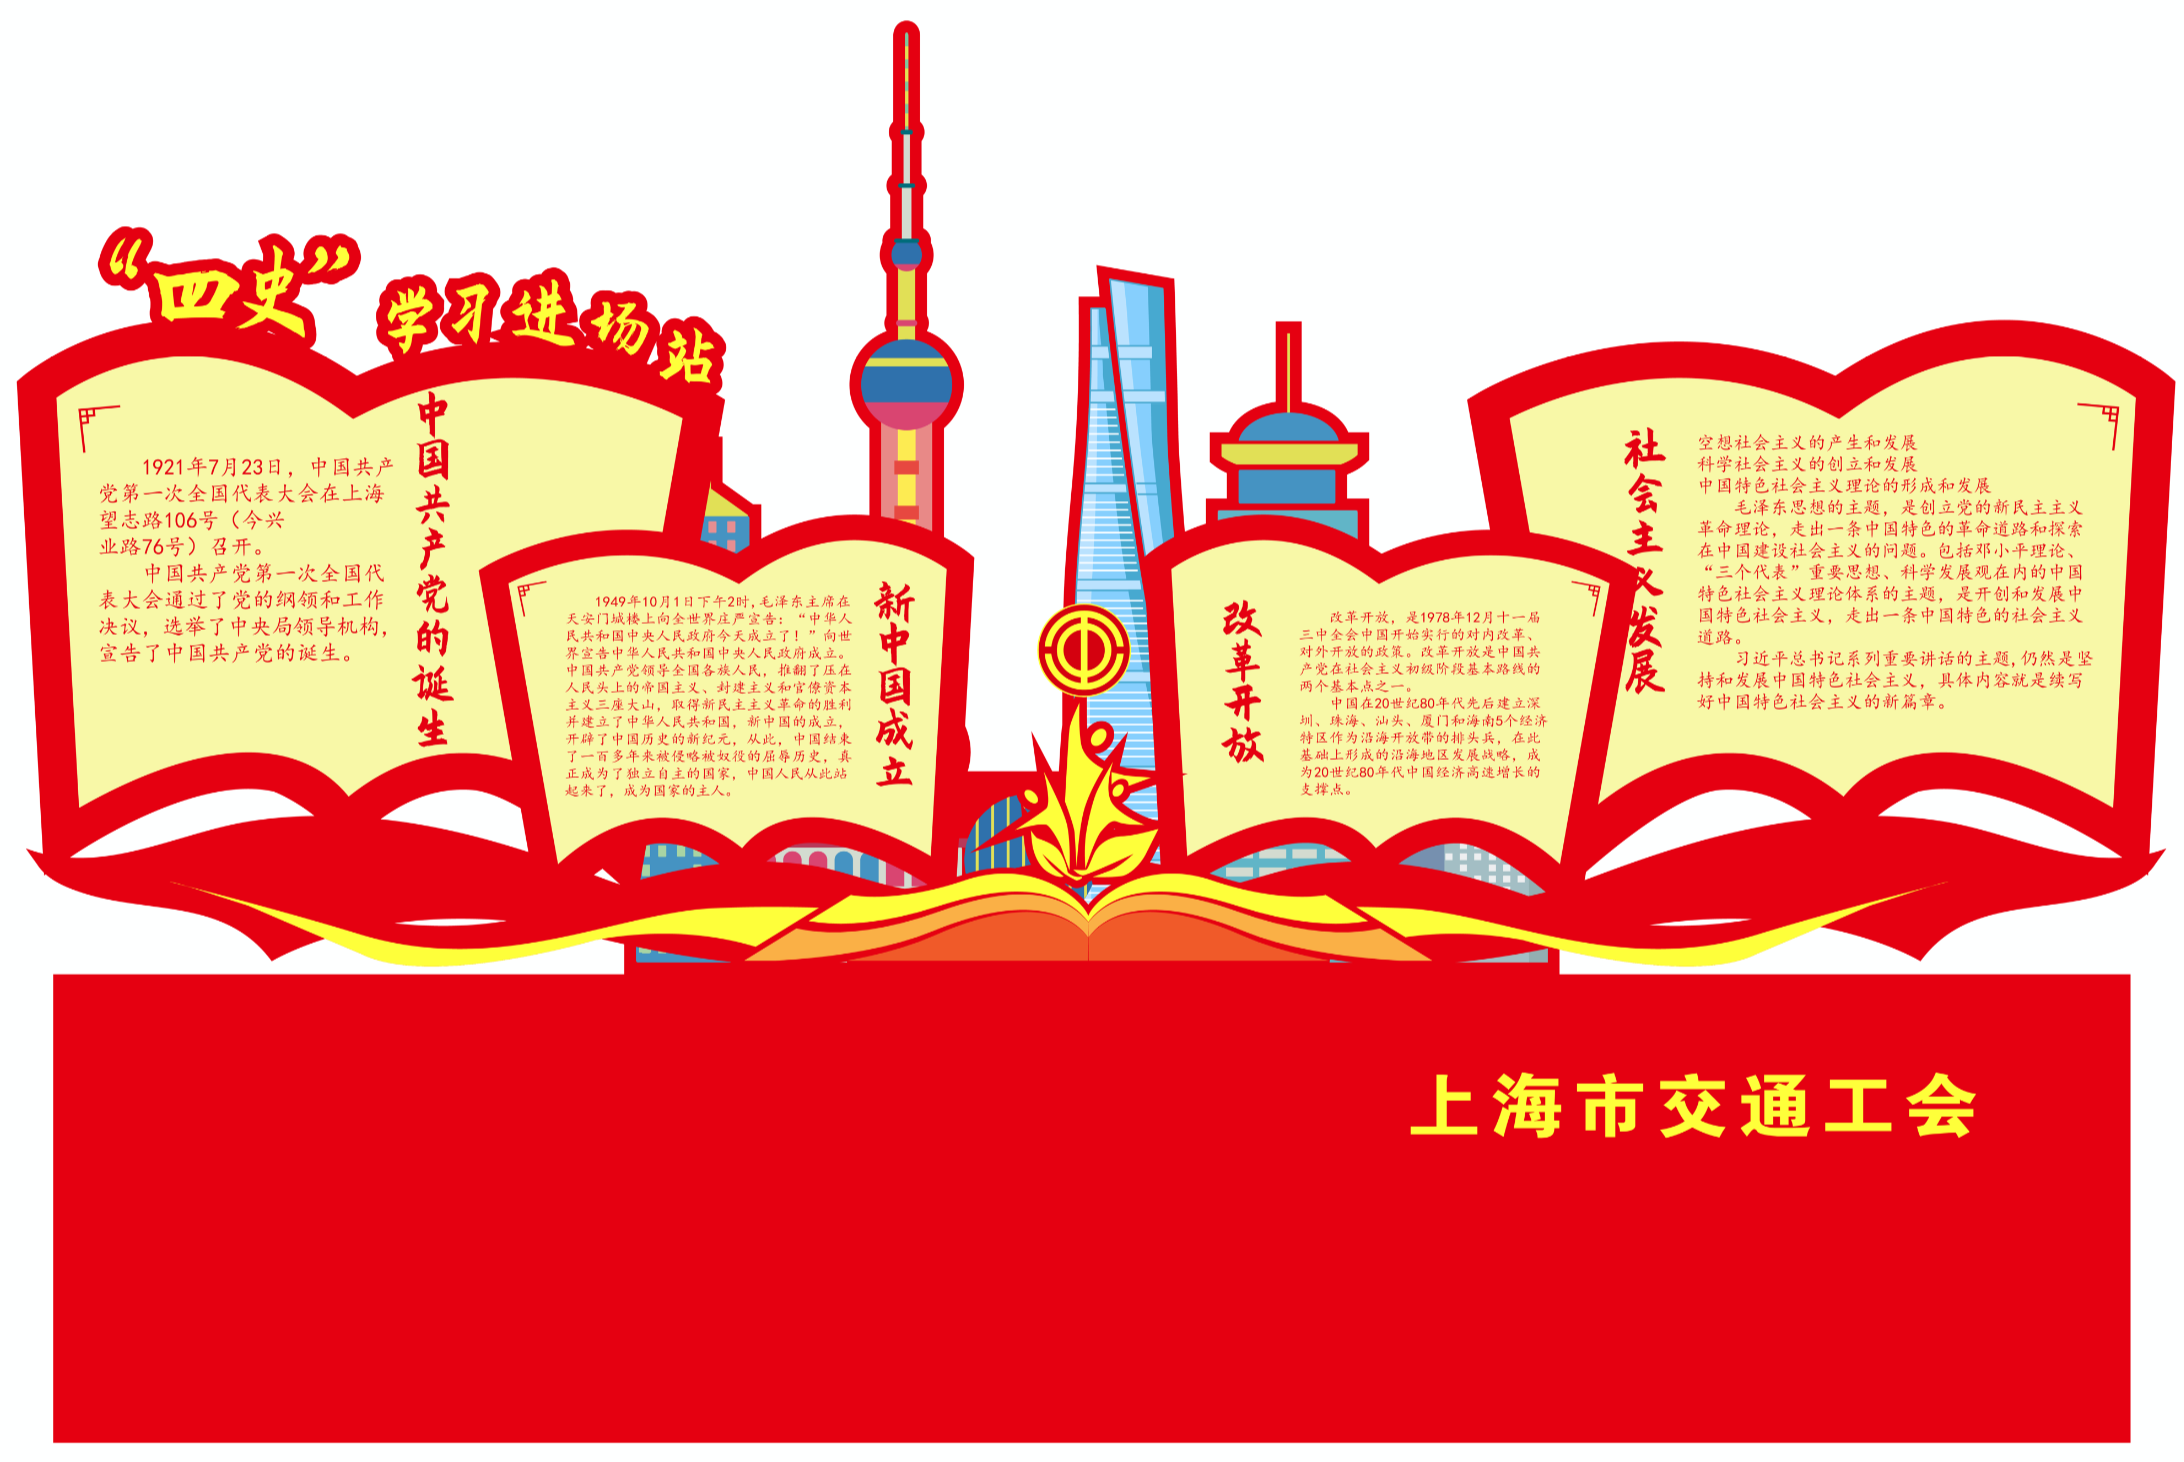 上海市交通工会“四史”学习进场站